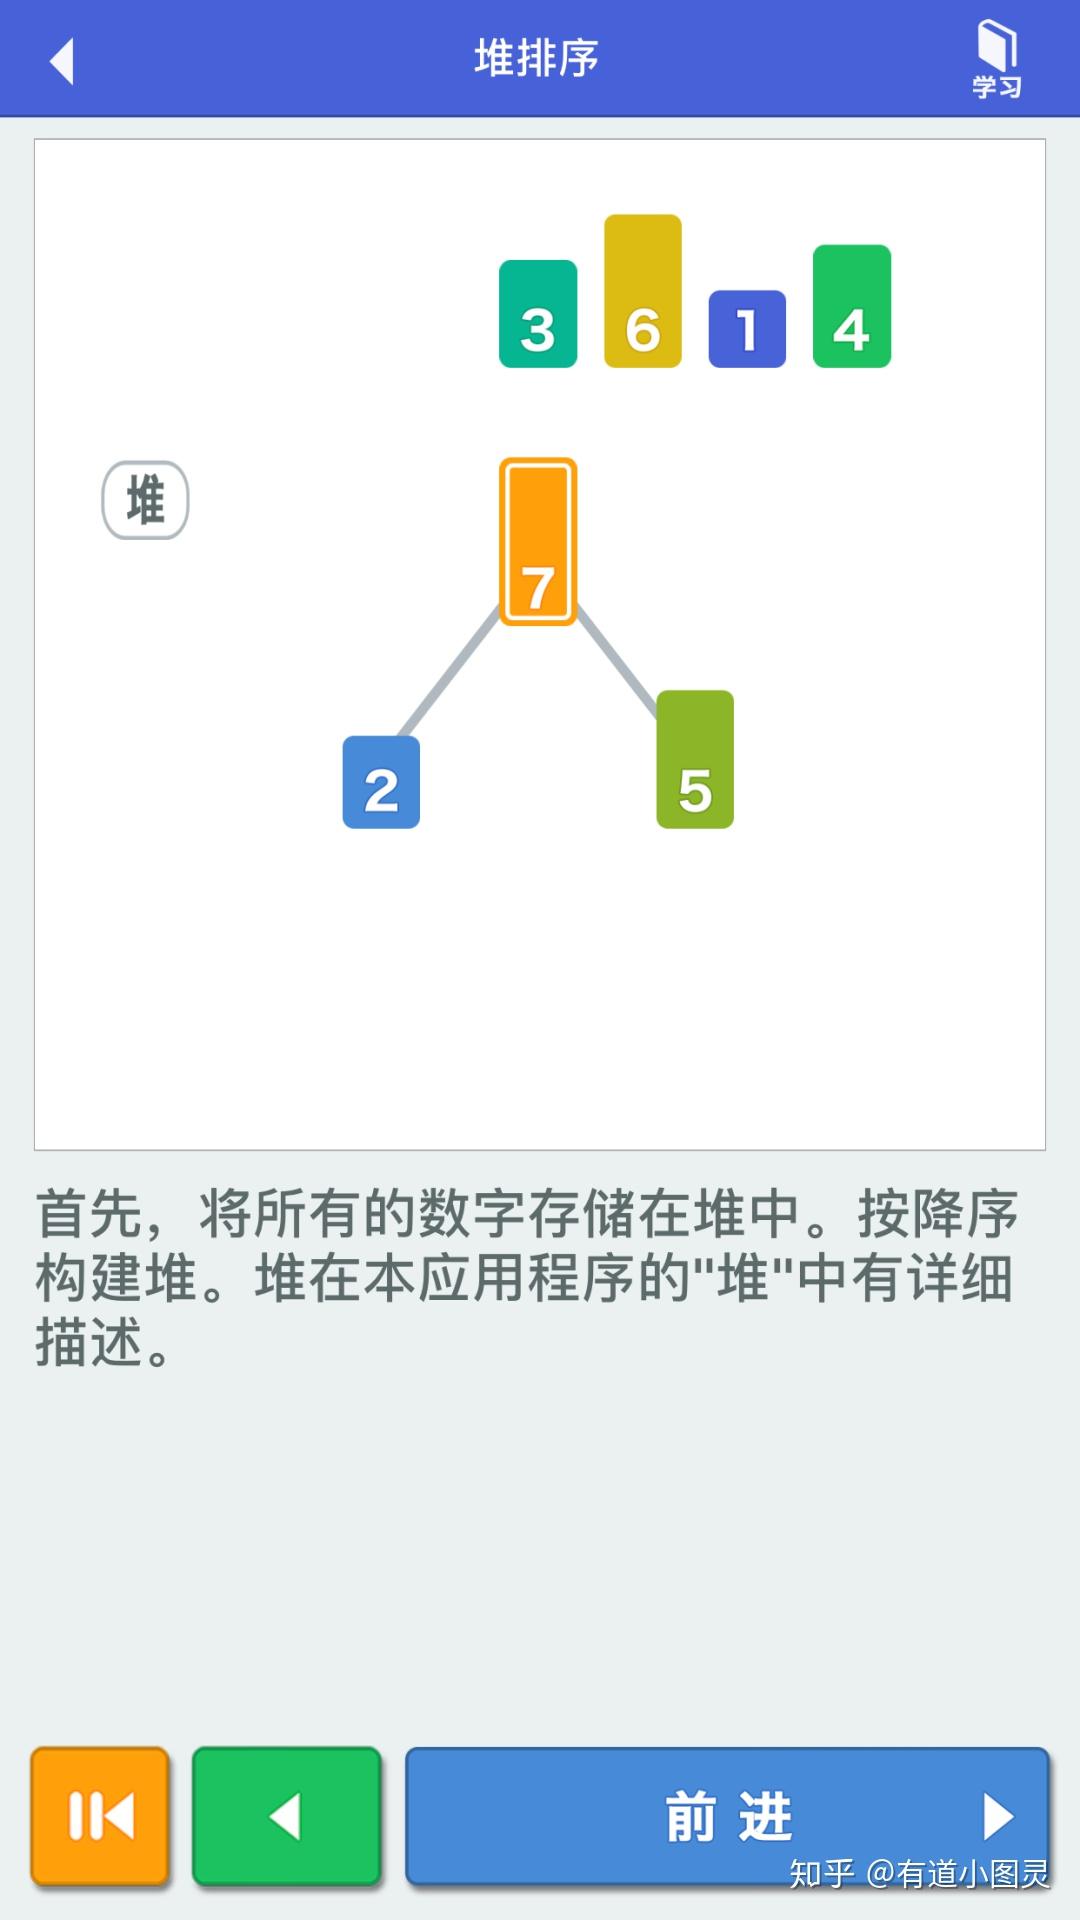 算法动画图解中文版图片